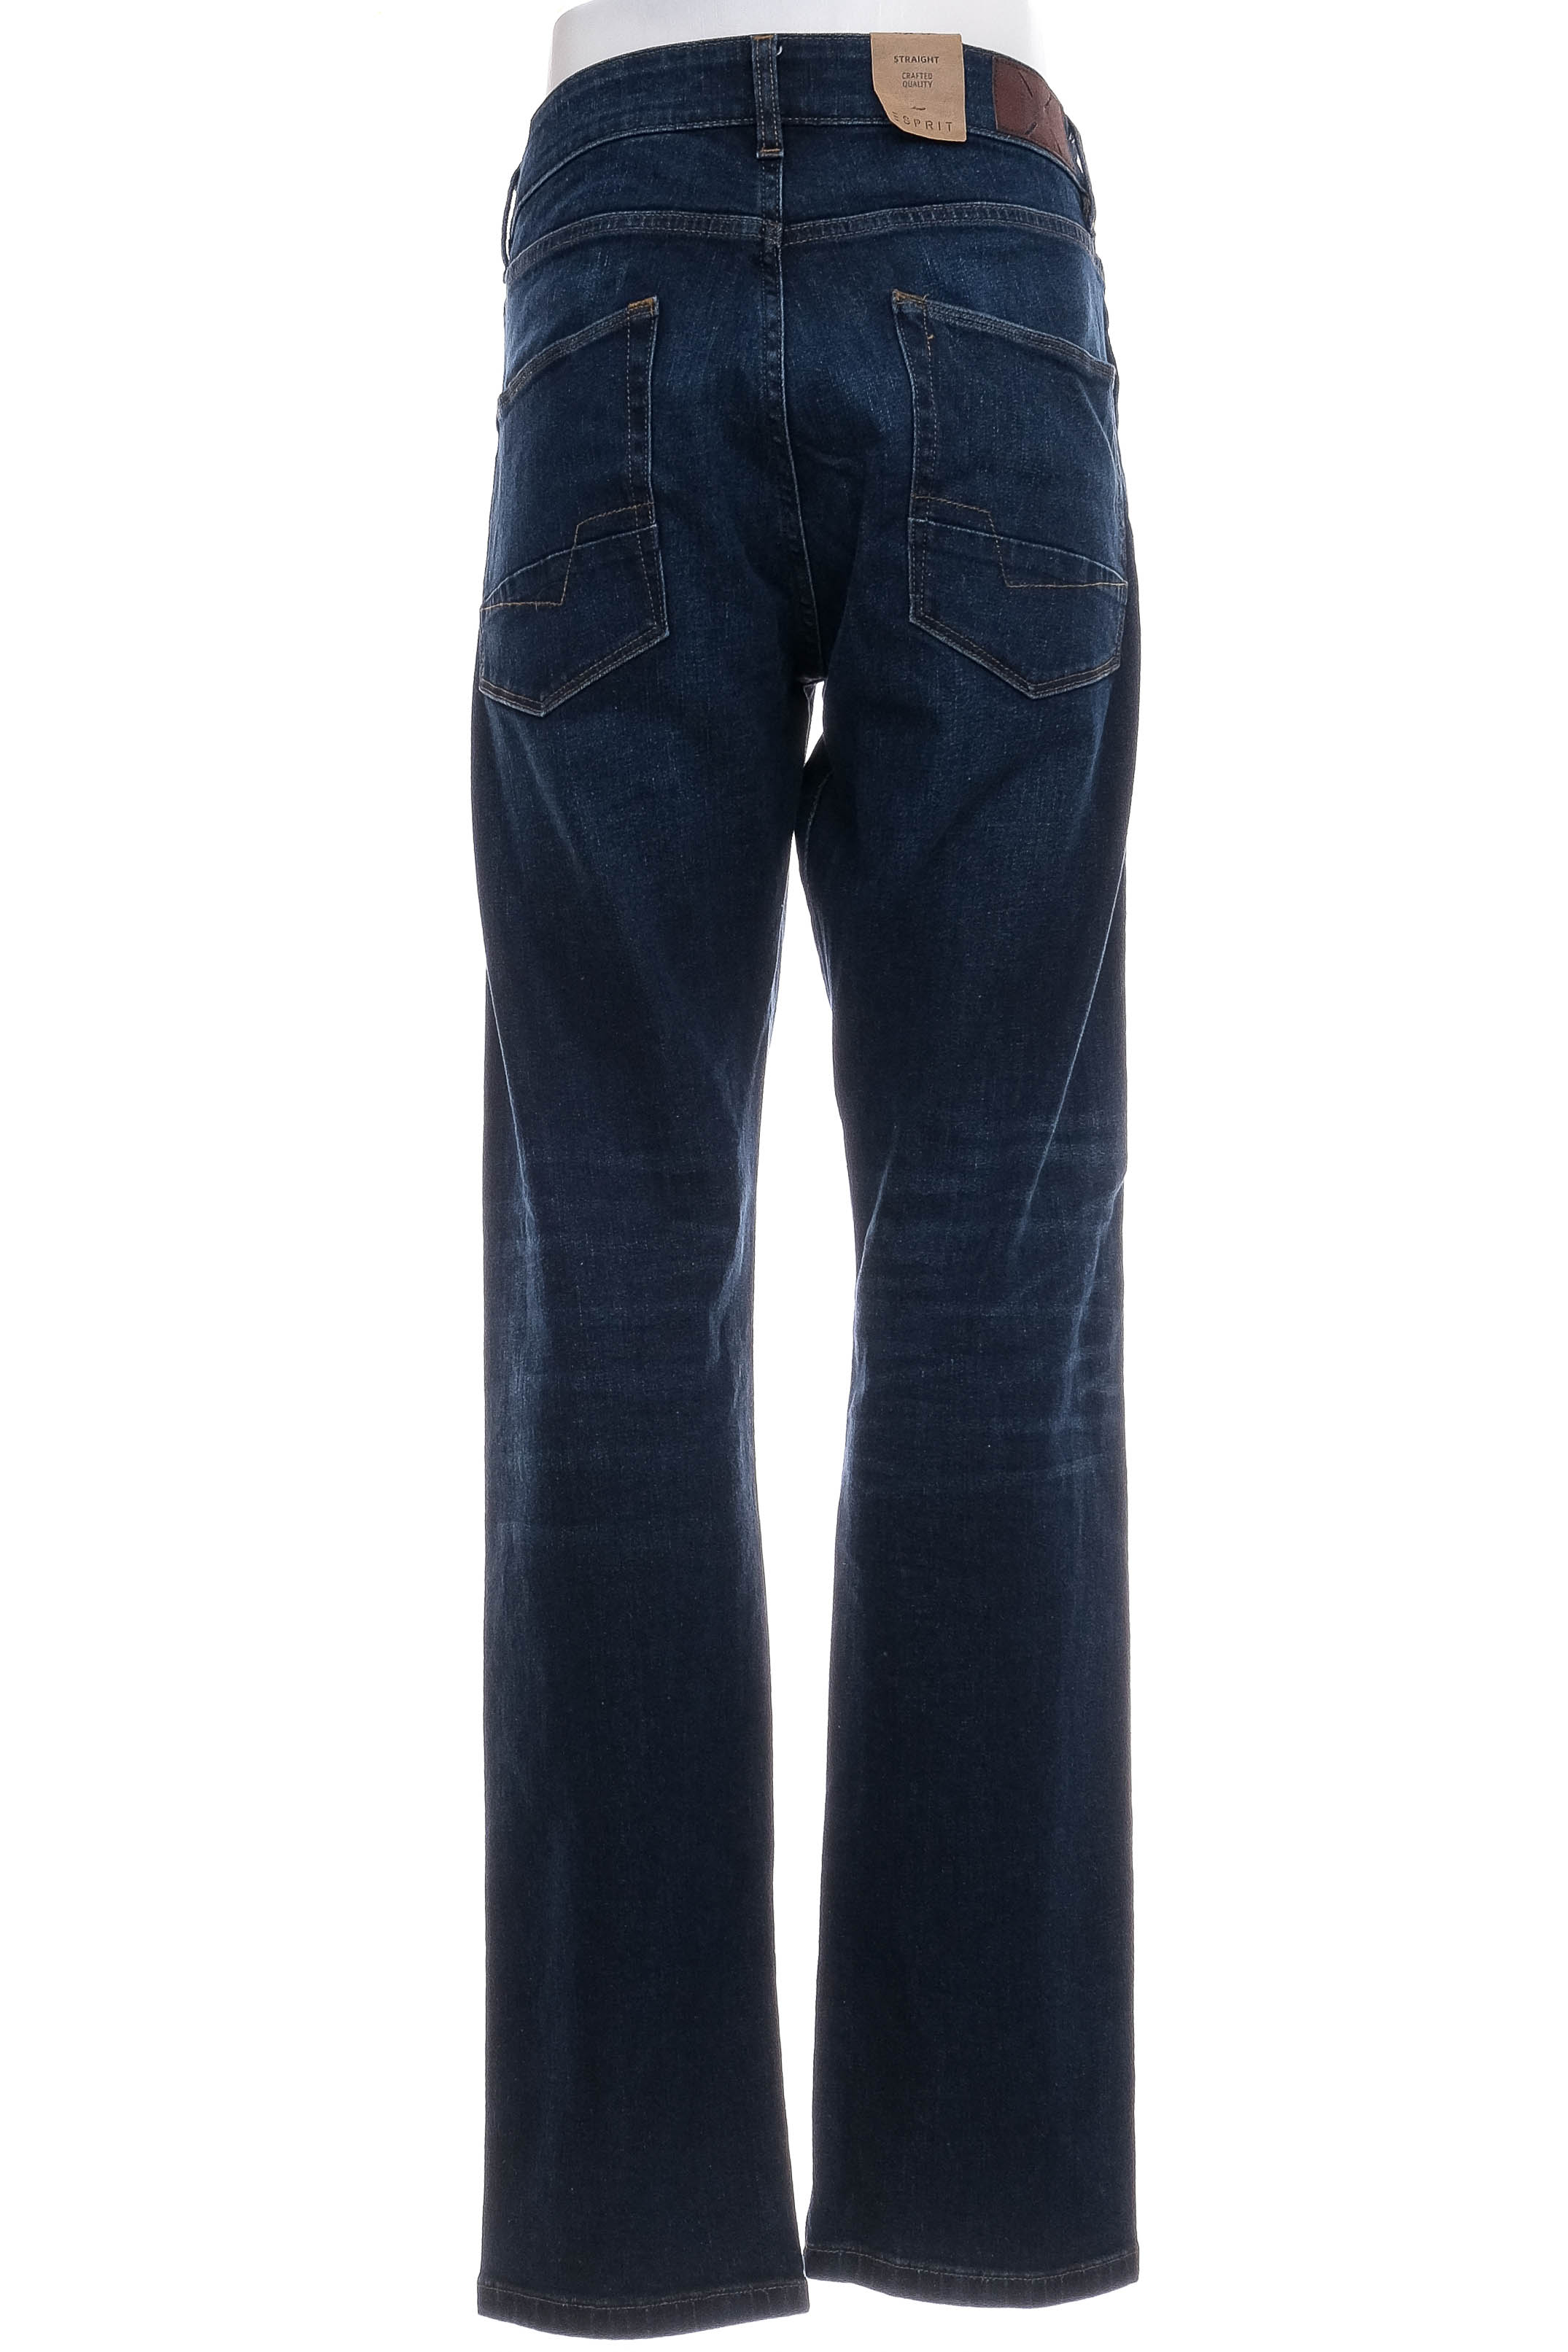 Jeans pentru bărbăți - ESPRIT - 1